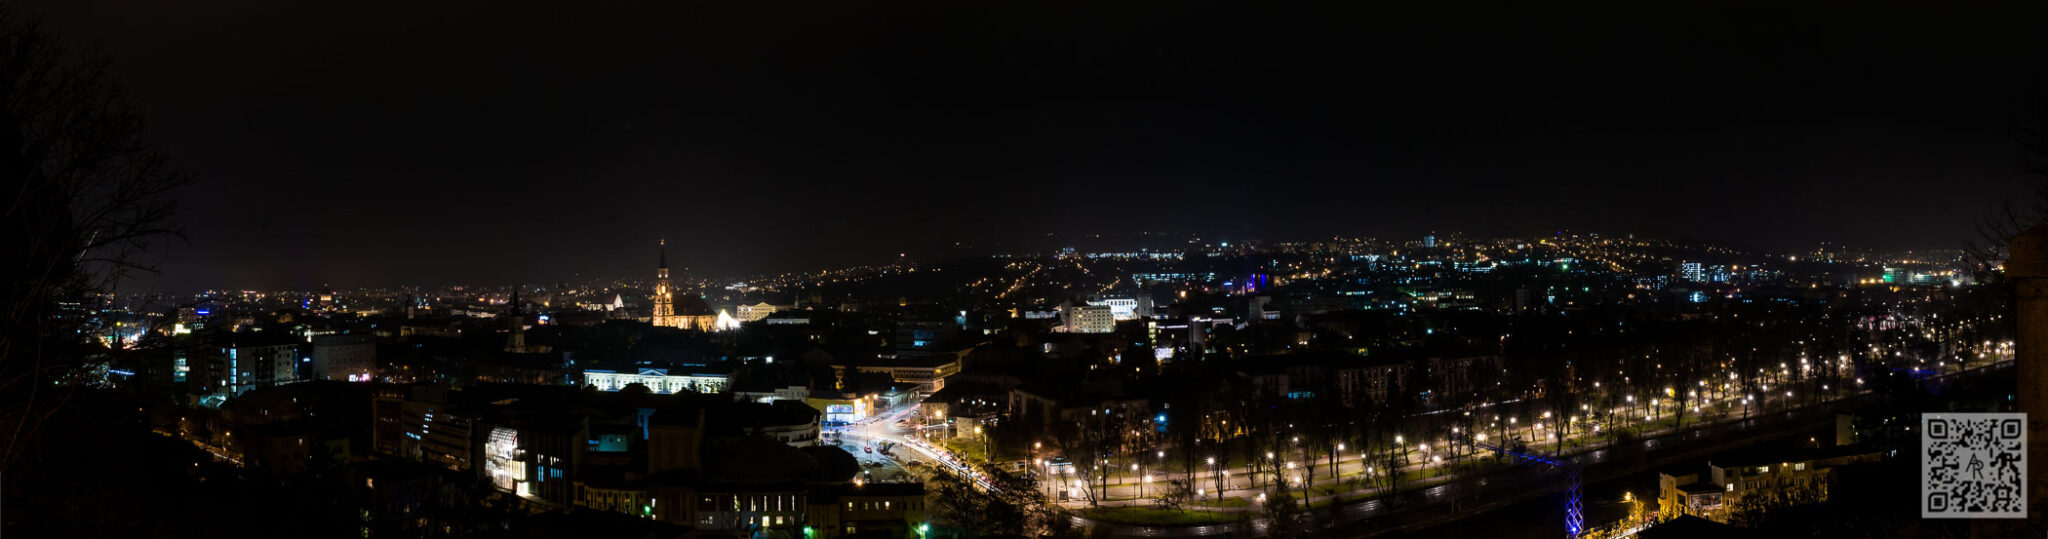 Cluj-Napoca in December